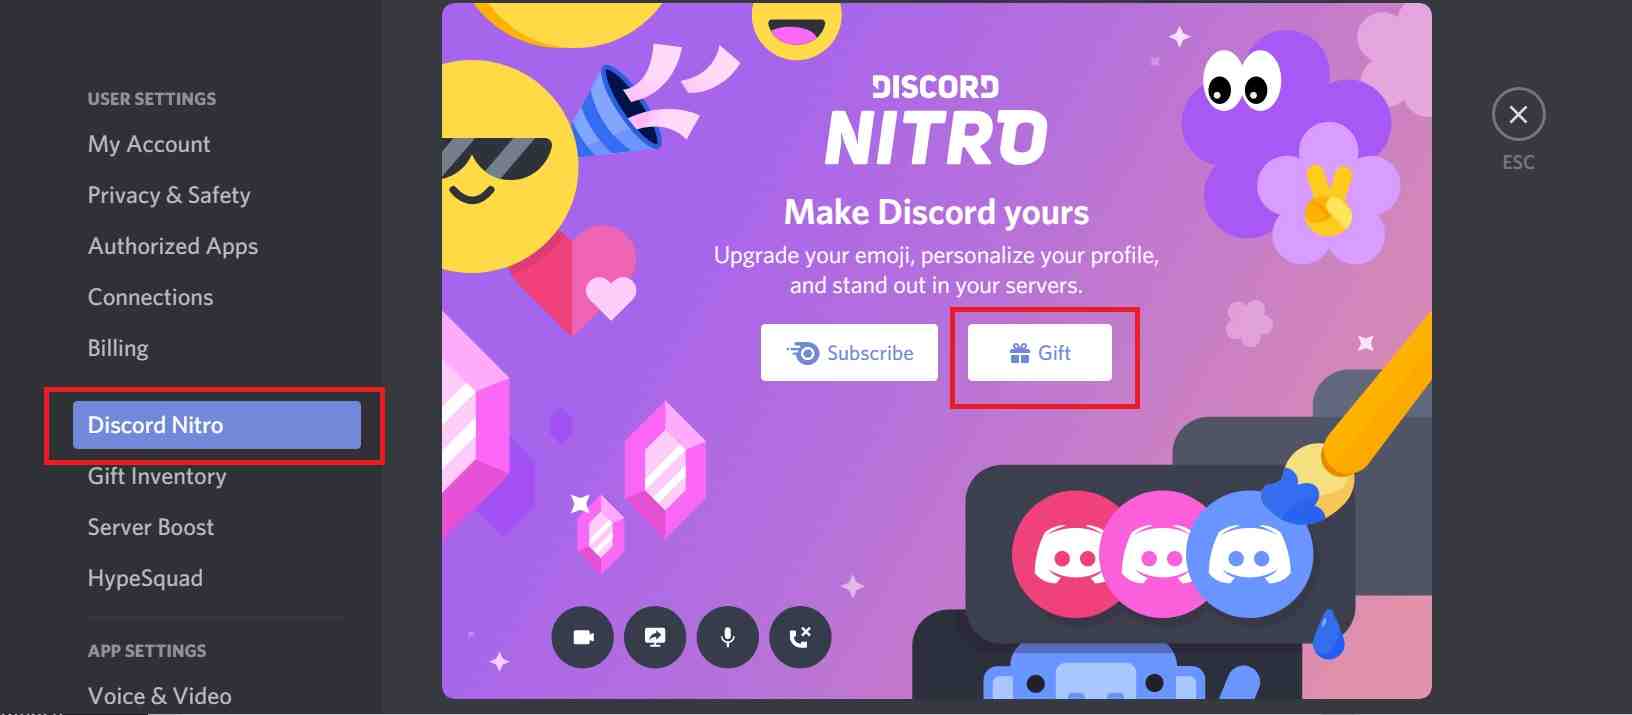 how to gift discord nitro